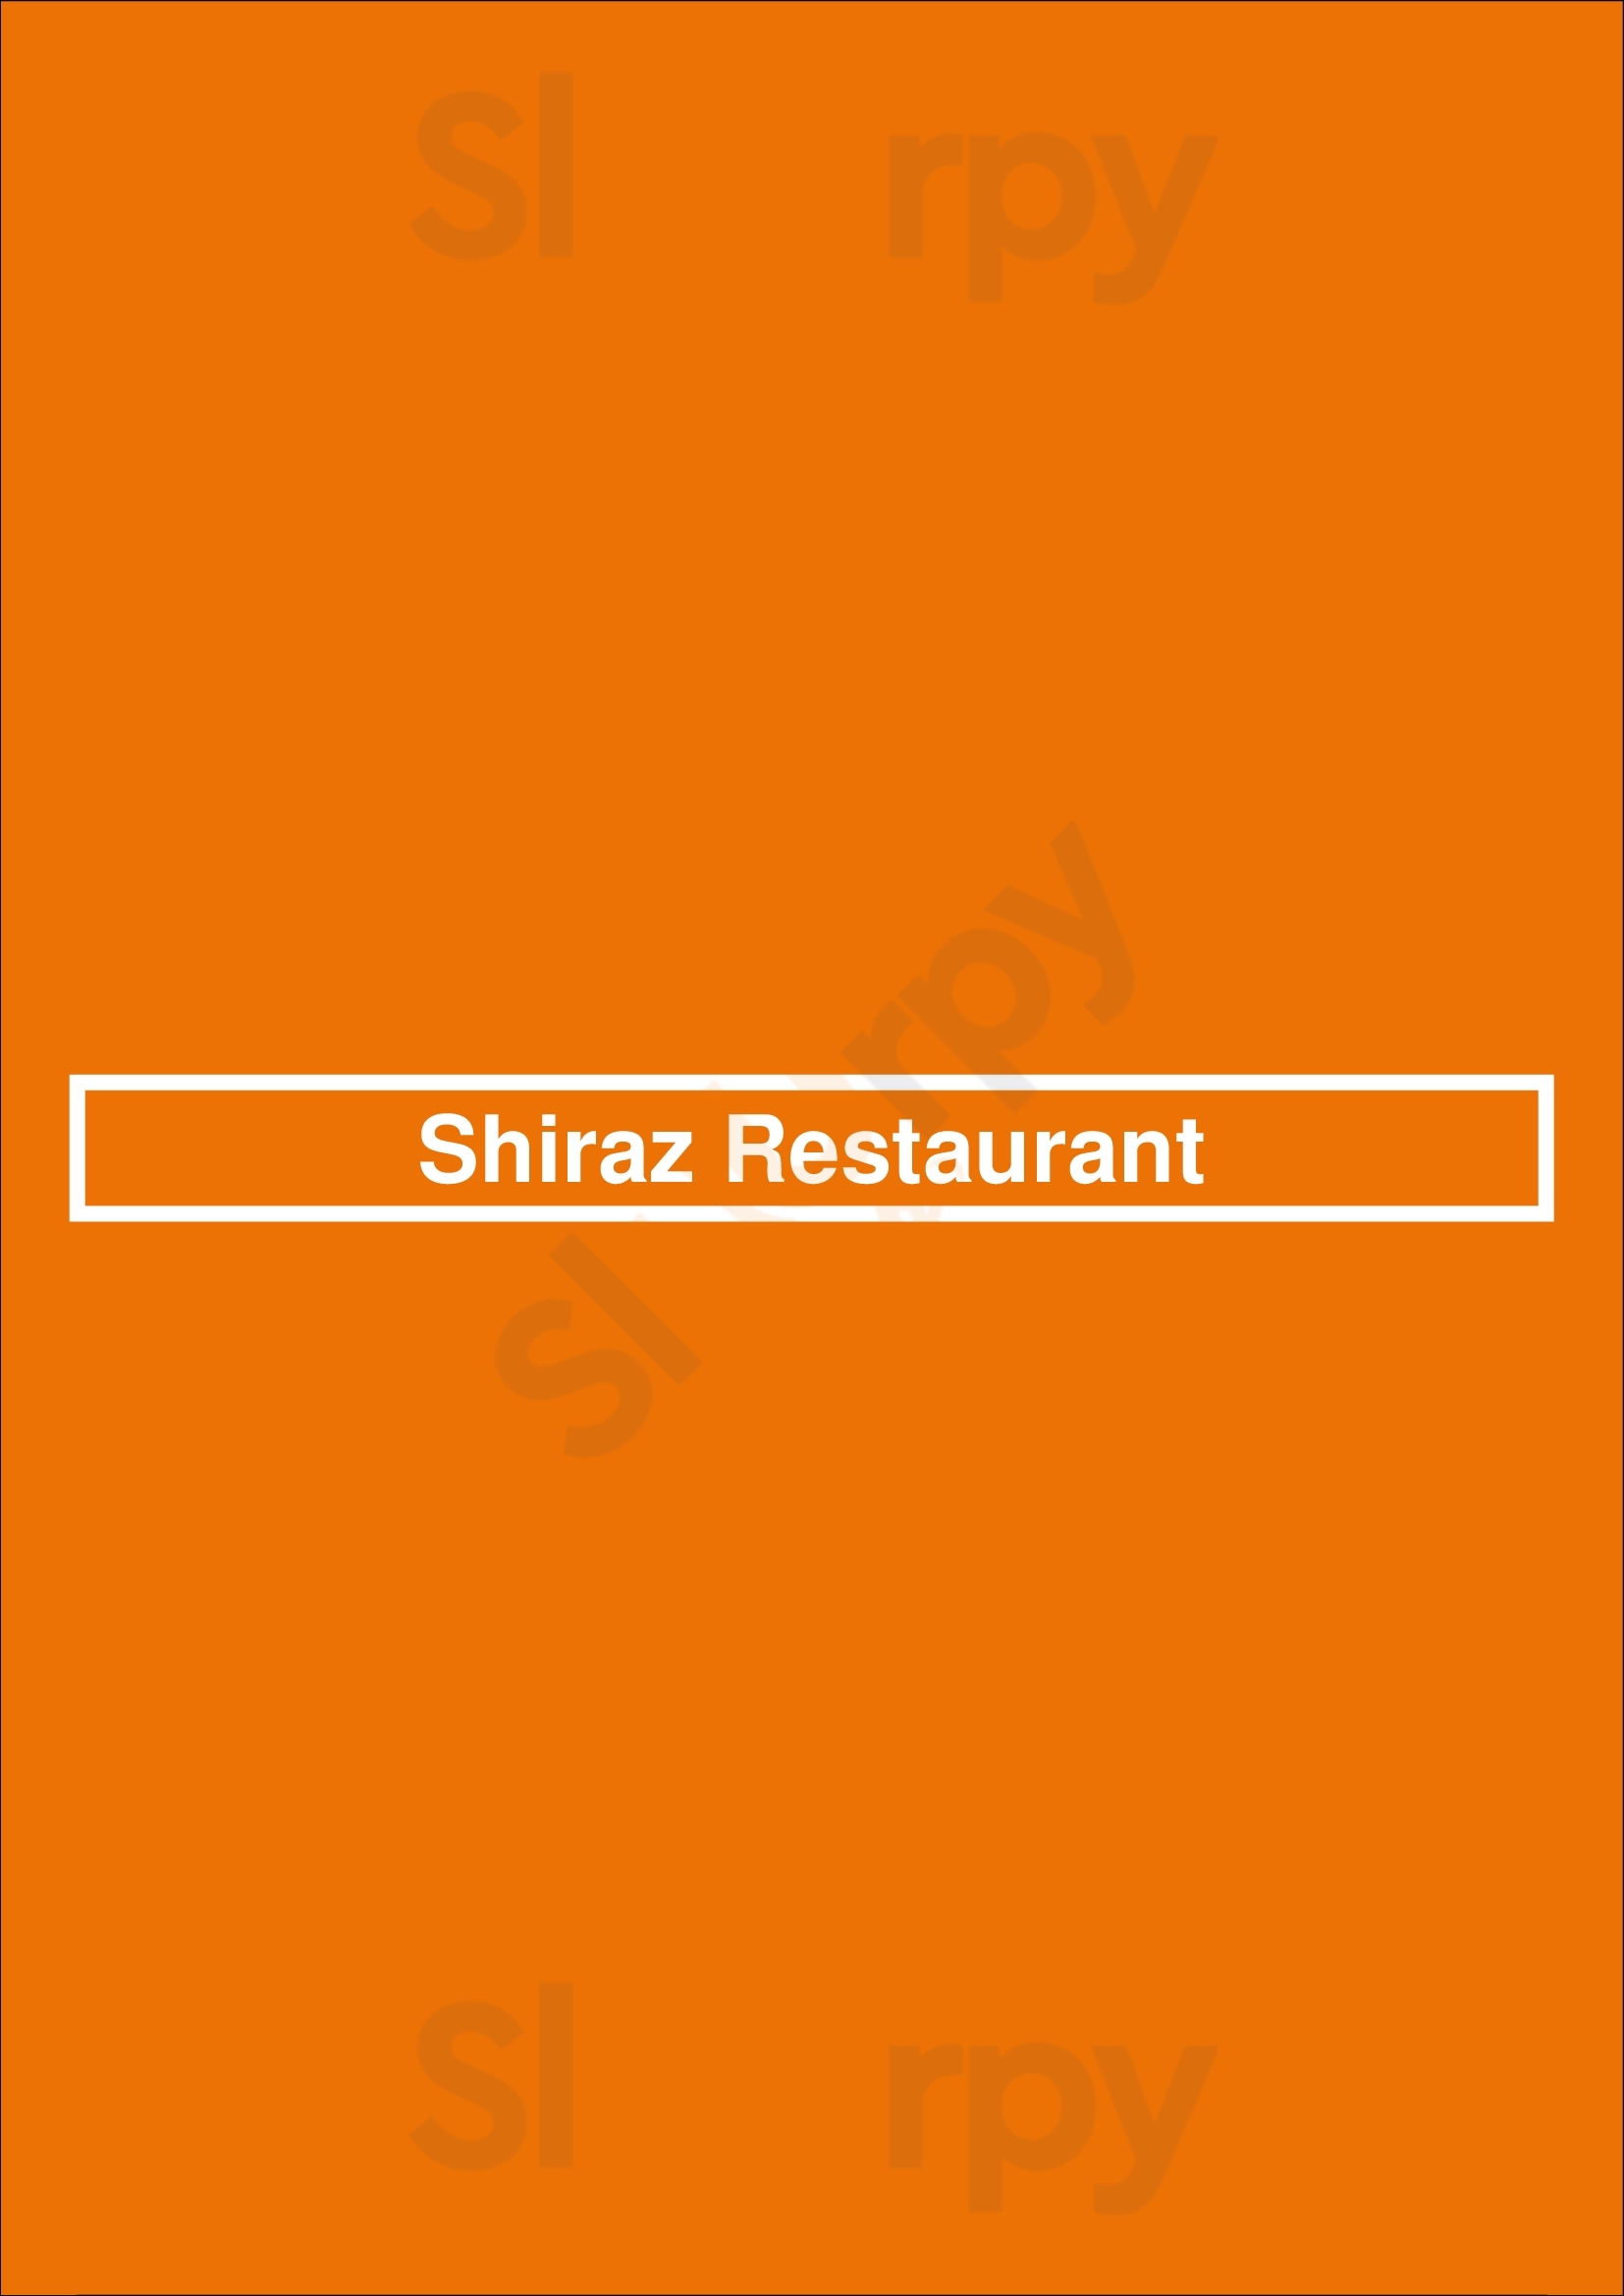 Shiraz Bistro & Market Miami Menu - 1